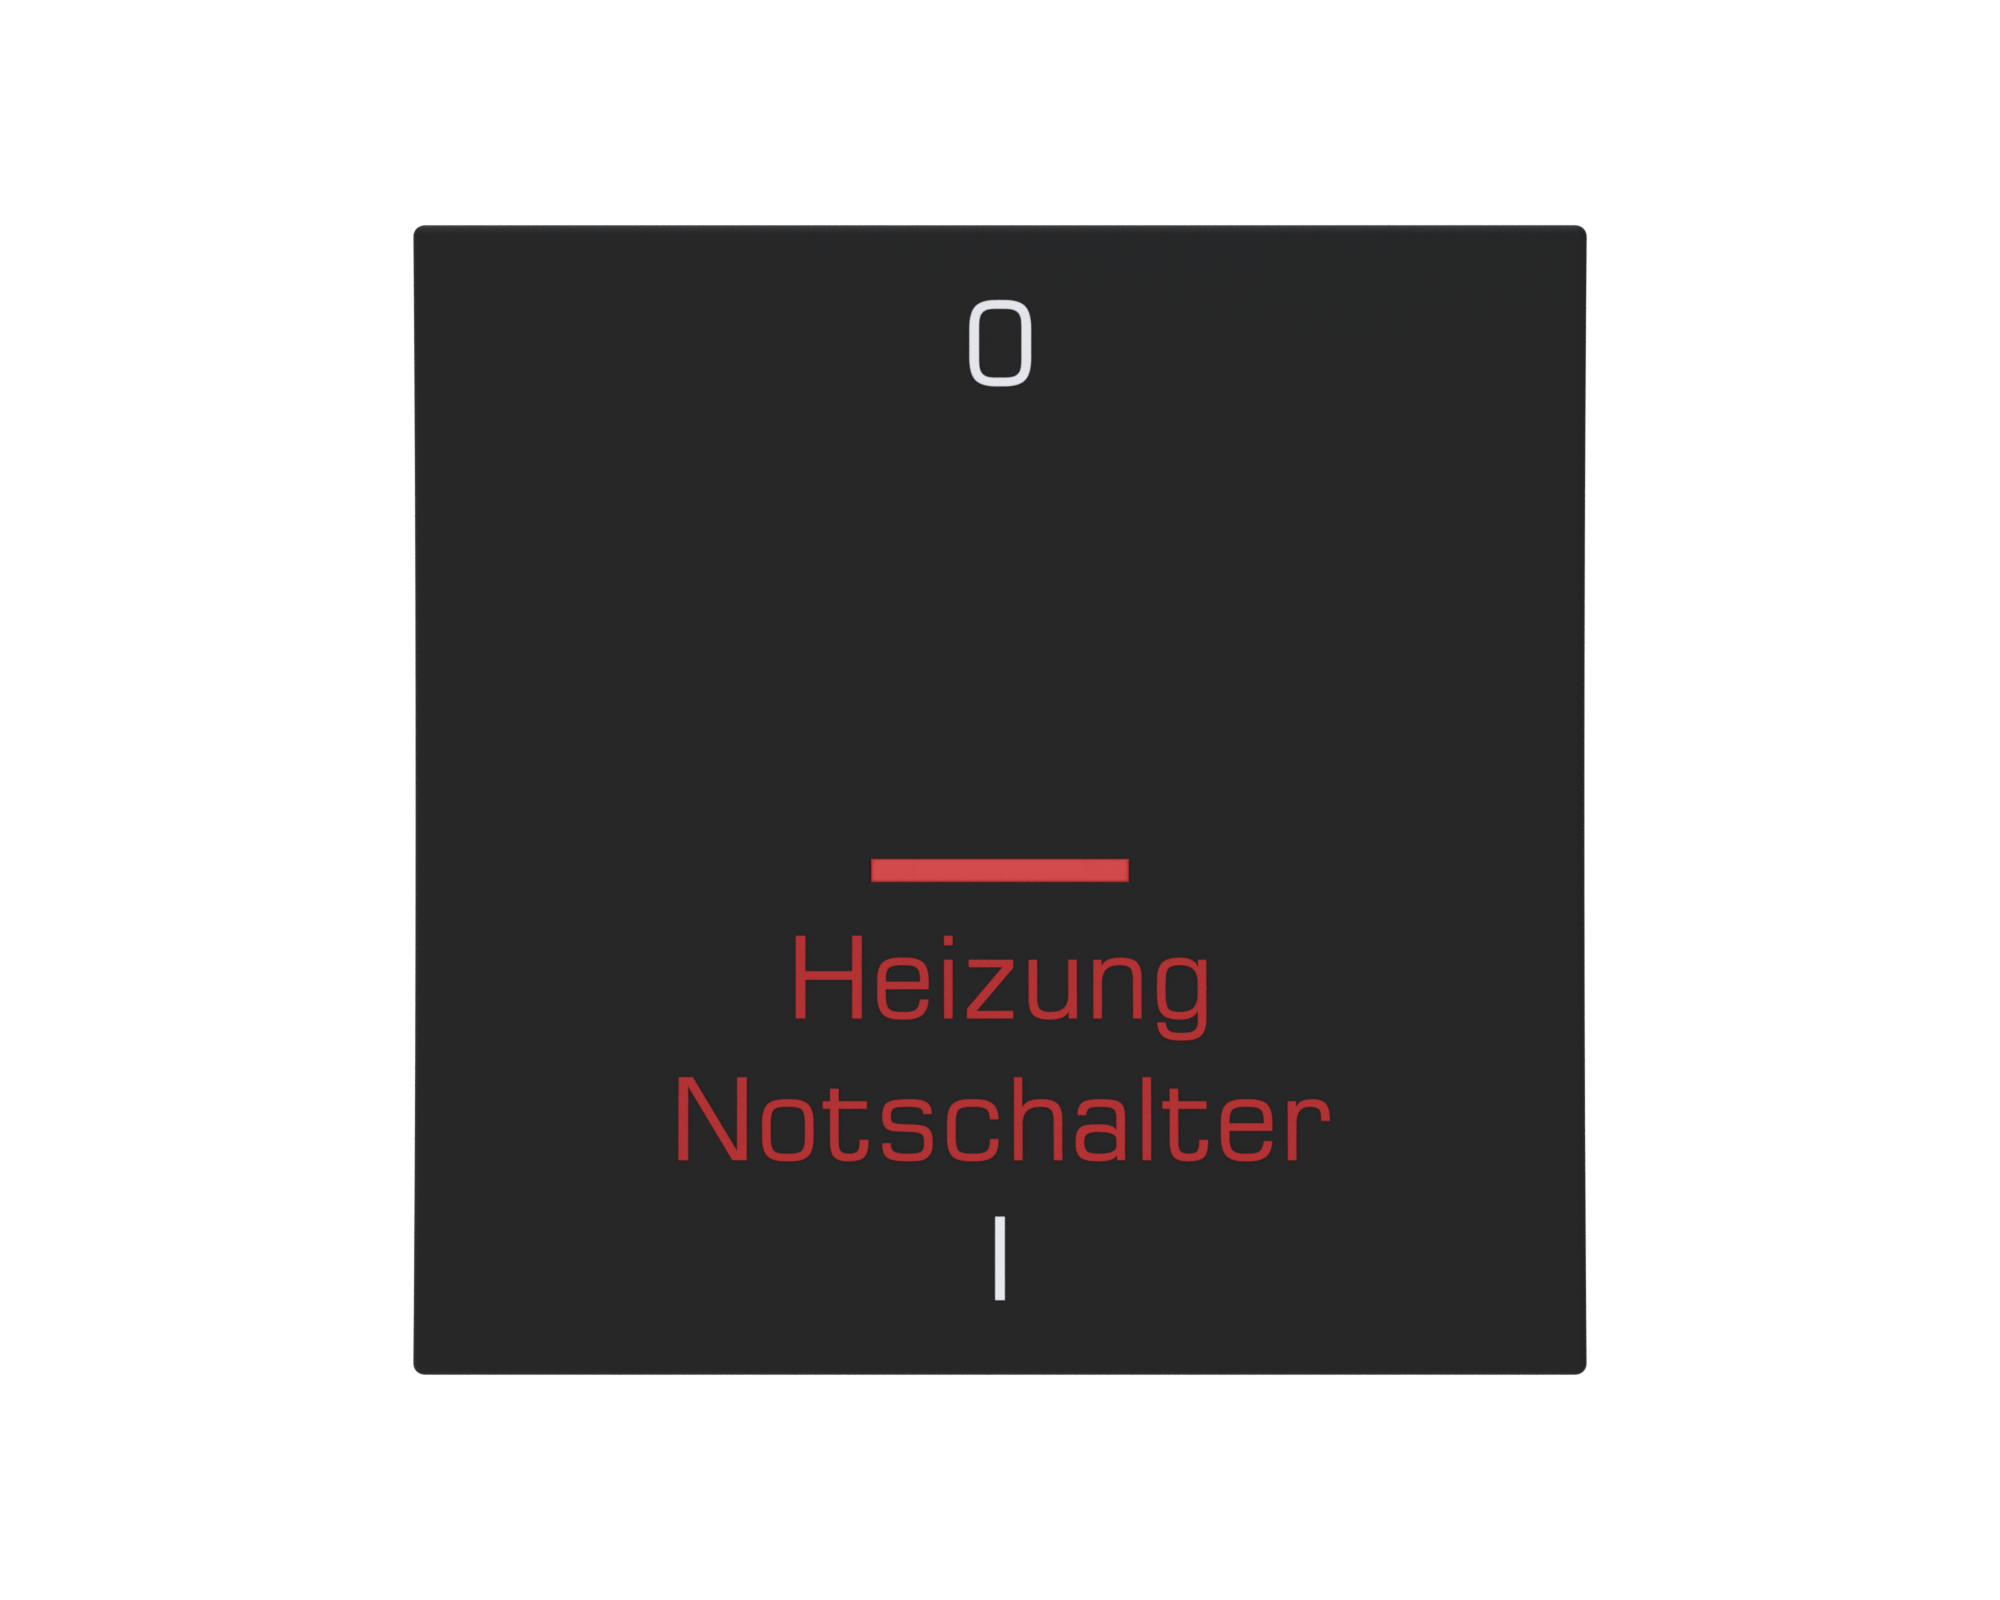 Eslohe Flächenwippe "Heizung Notschalter" mit Linse rot und Symbol 0 + I soft-touch schwarz, Bedruckung weiß